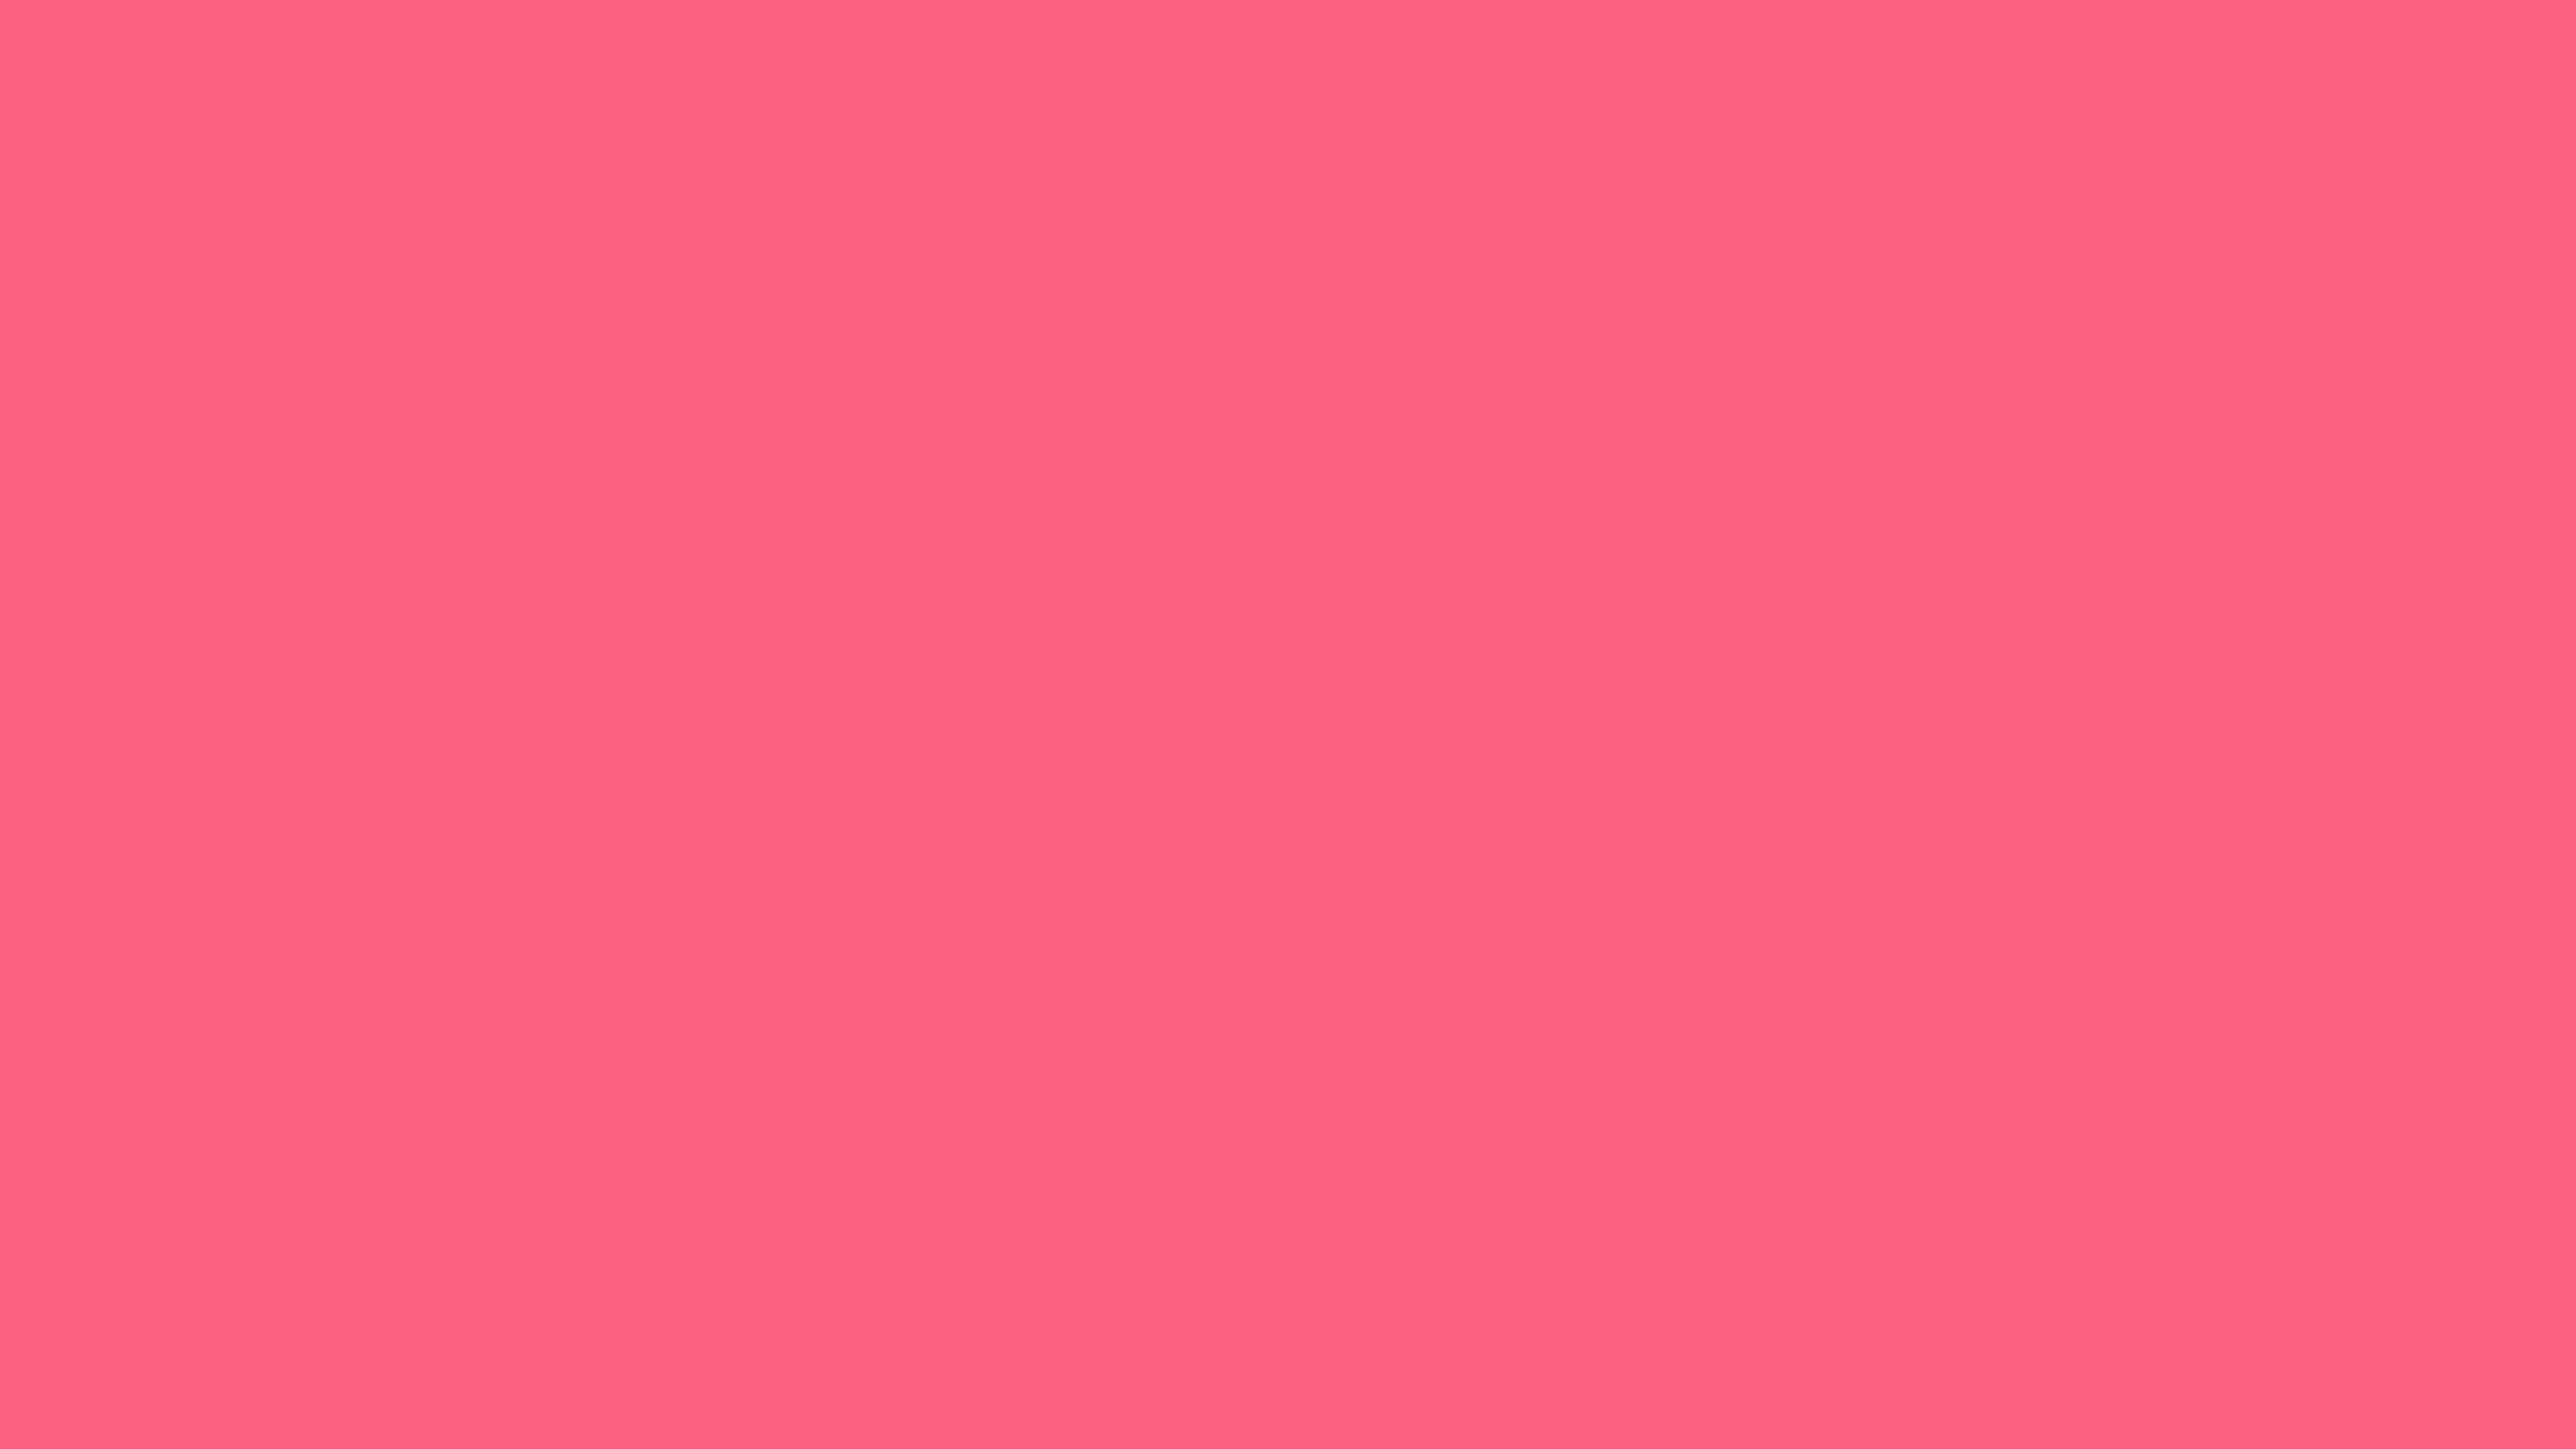 3840x2160 Brink Pink Solid Color Background